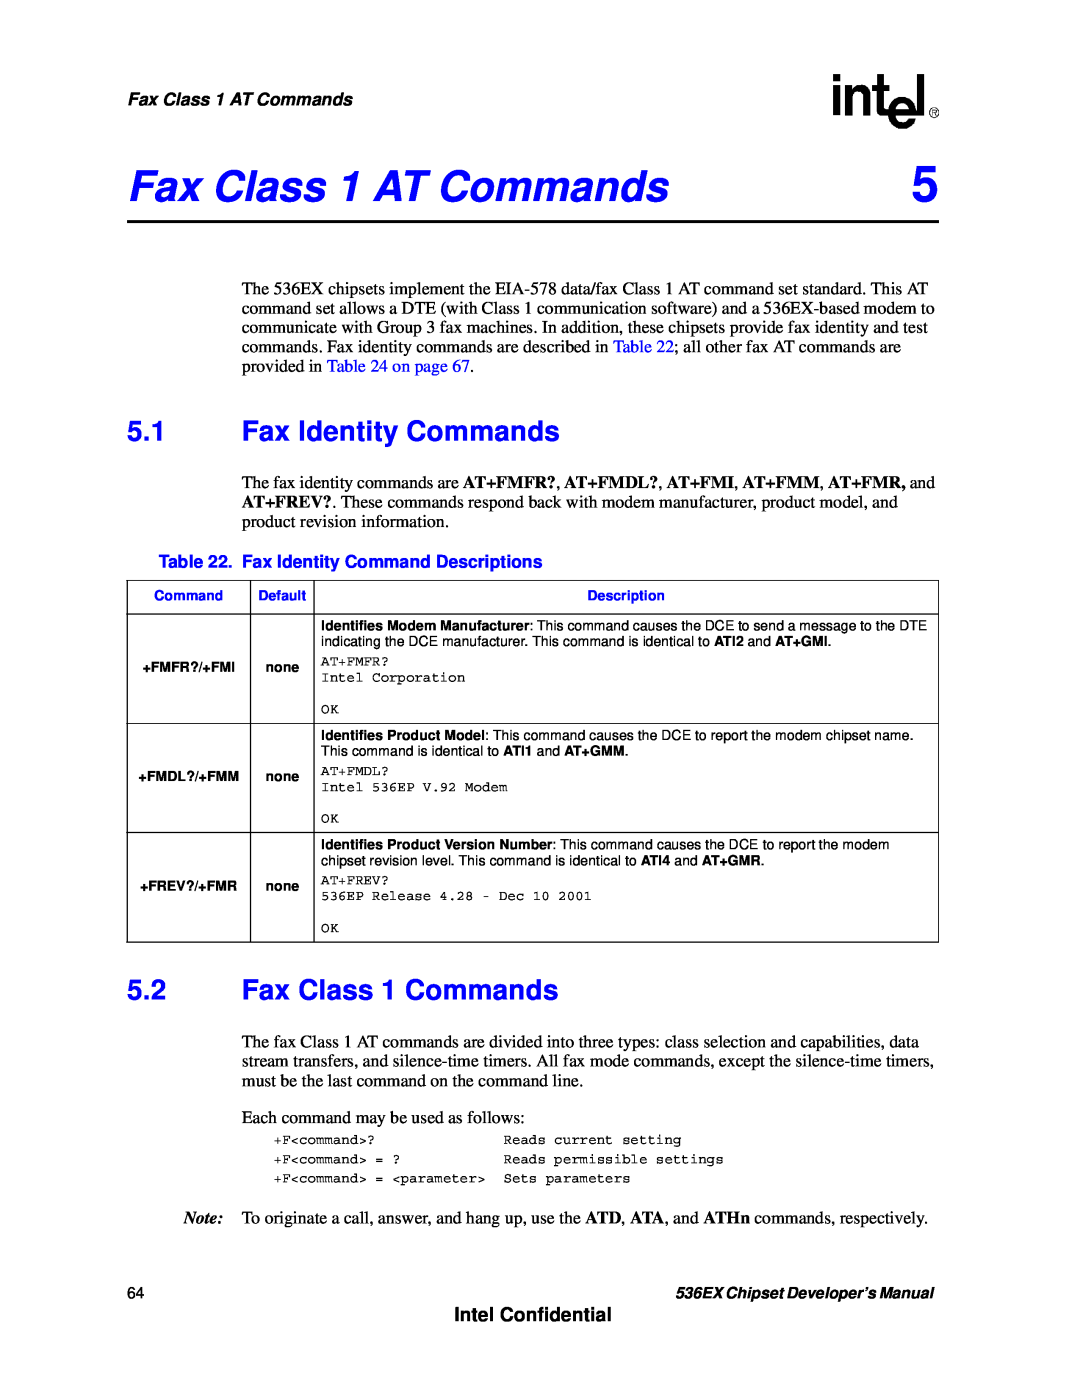 Intel 536EX manual Fax Class 1 AT Commands, 5.1Fax Identity Commands, 5.2Fax Class 1 Commands, Intel Confidential 